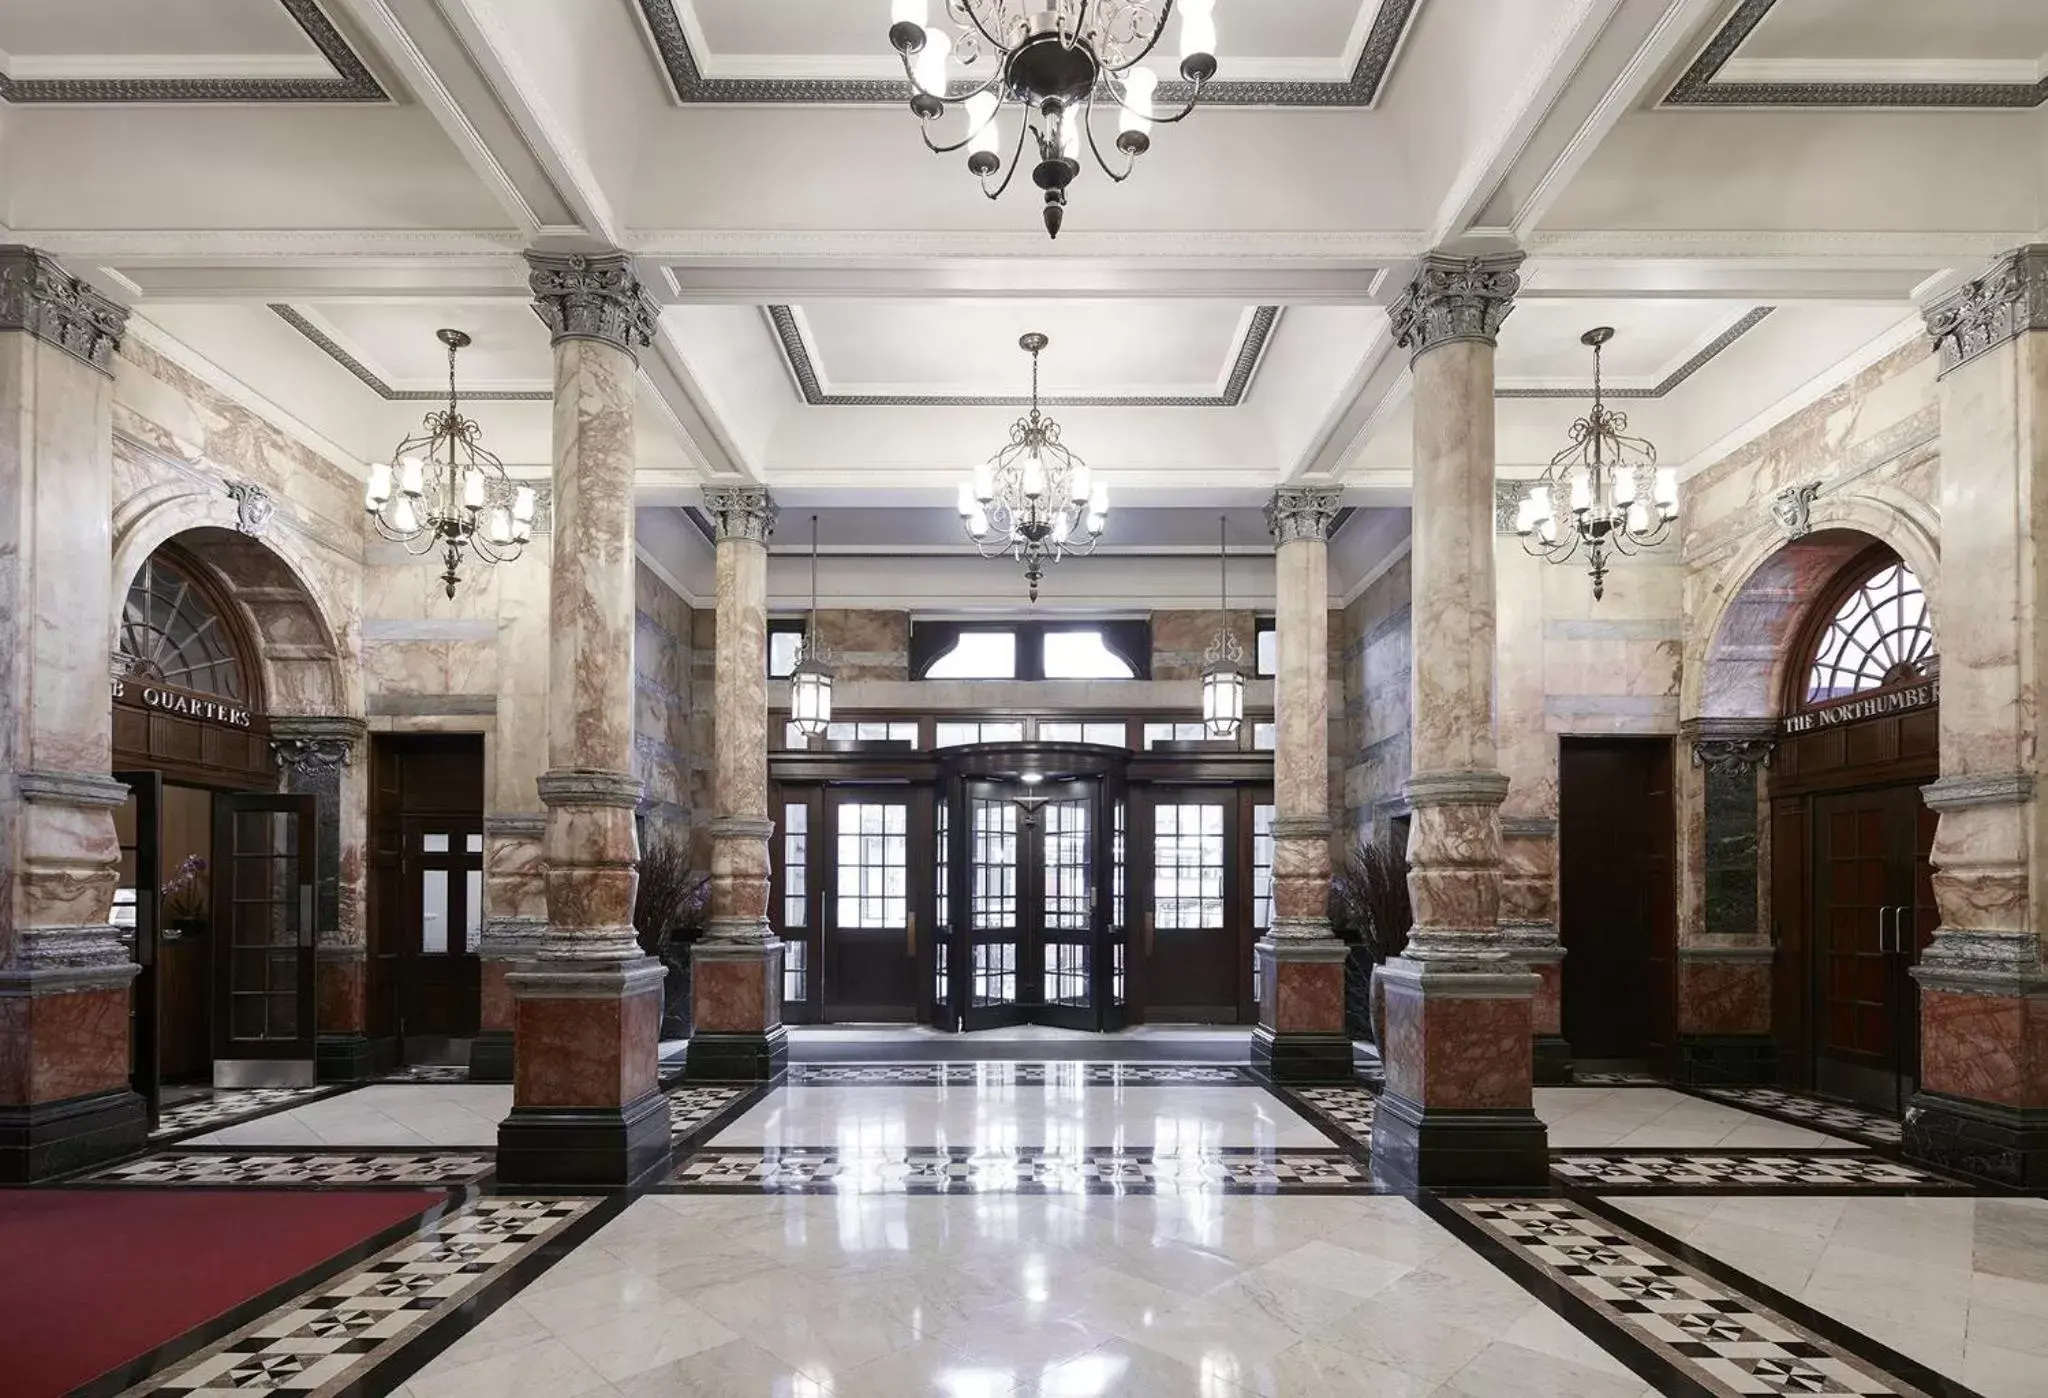 Lobby or reception, Lobby/Reception in Club Quarters Hotel Trafalgar Square, London